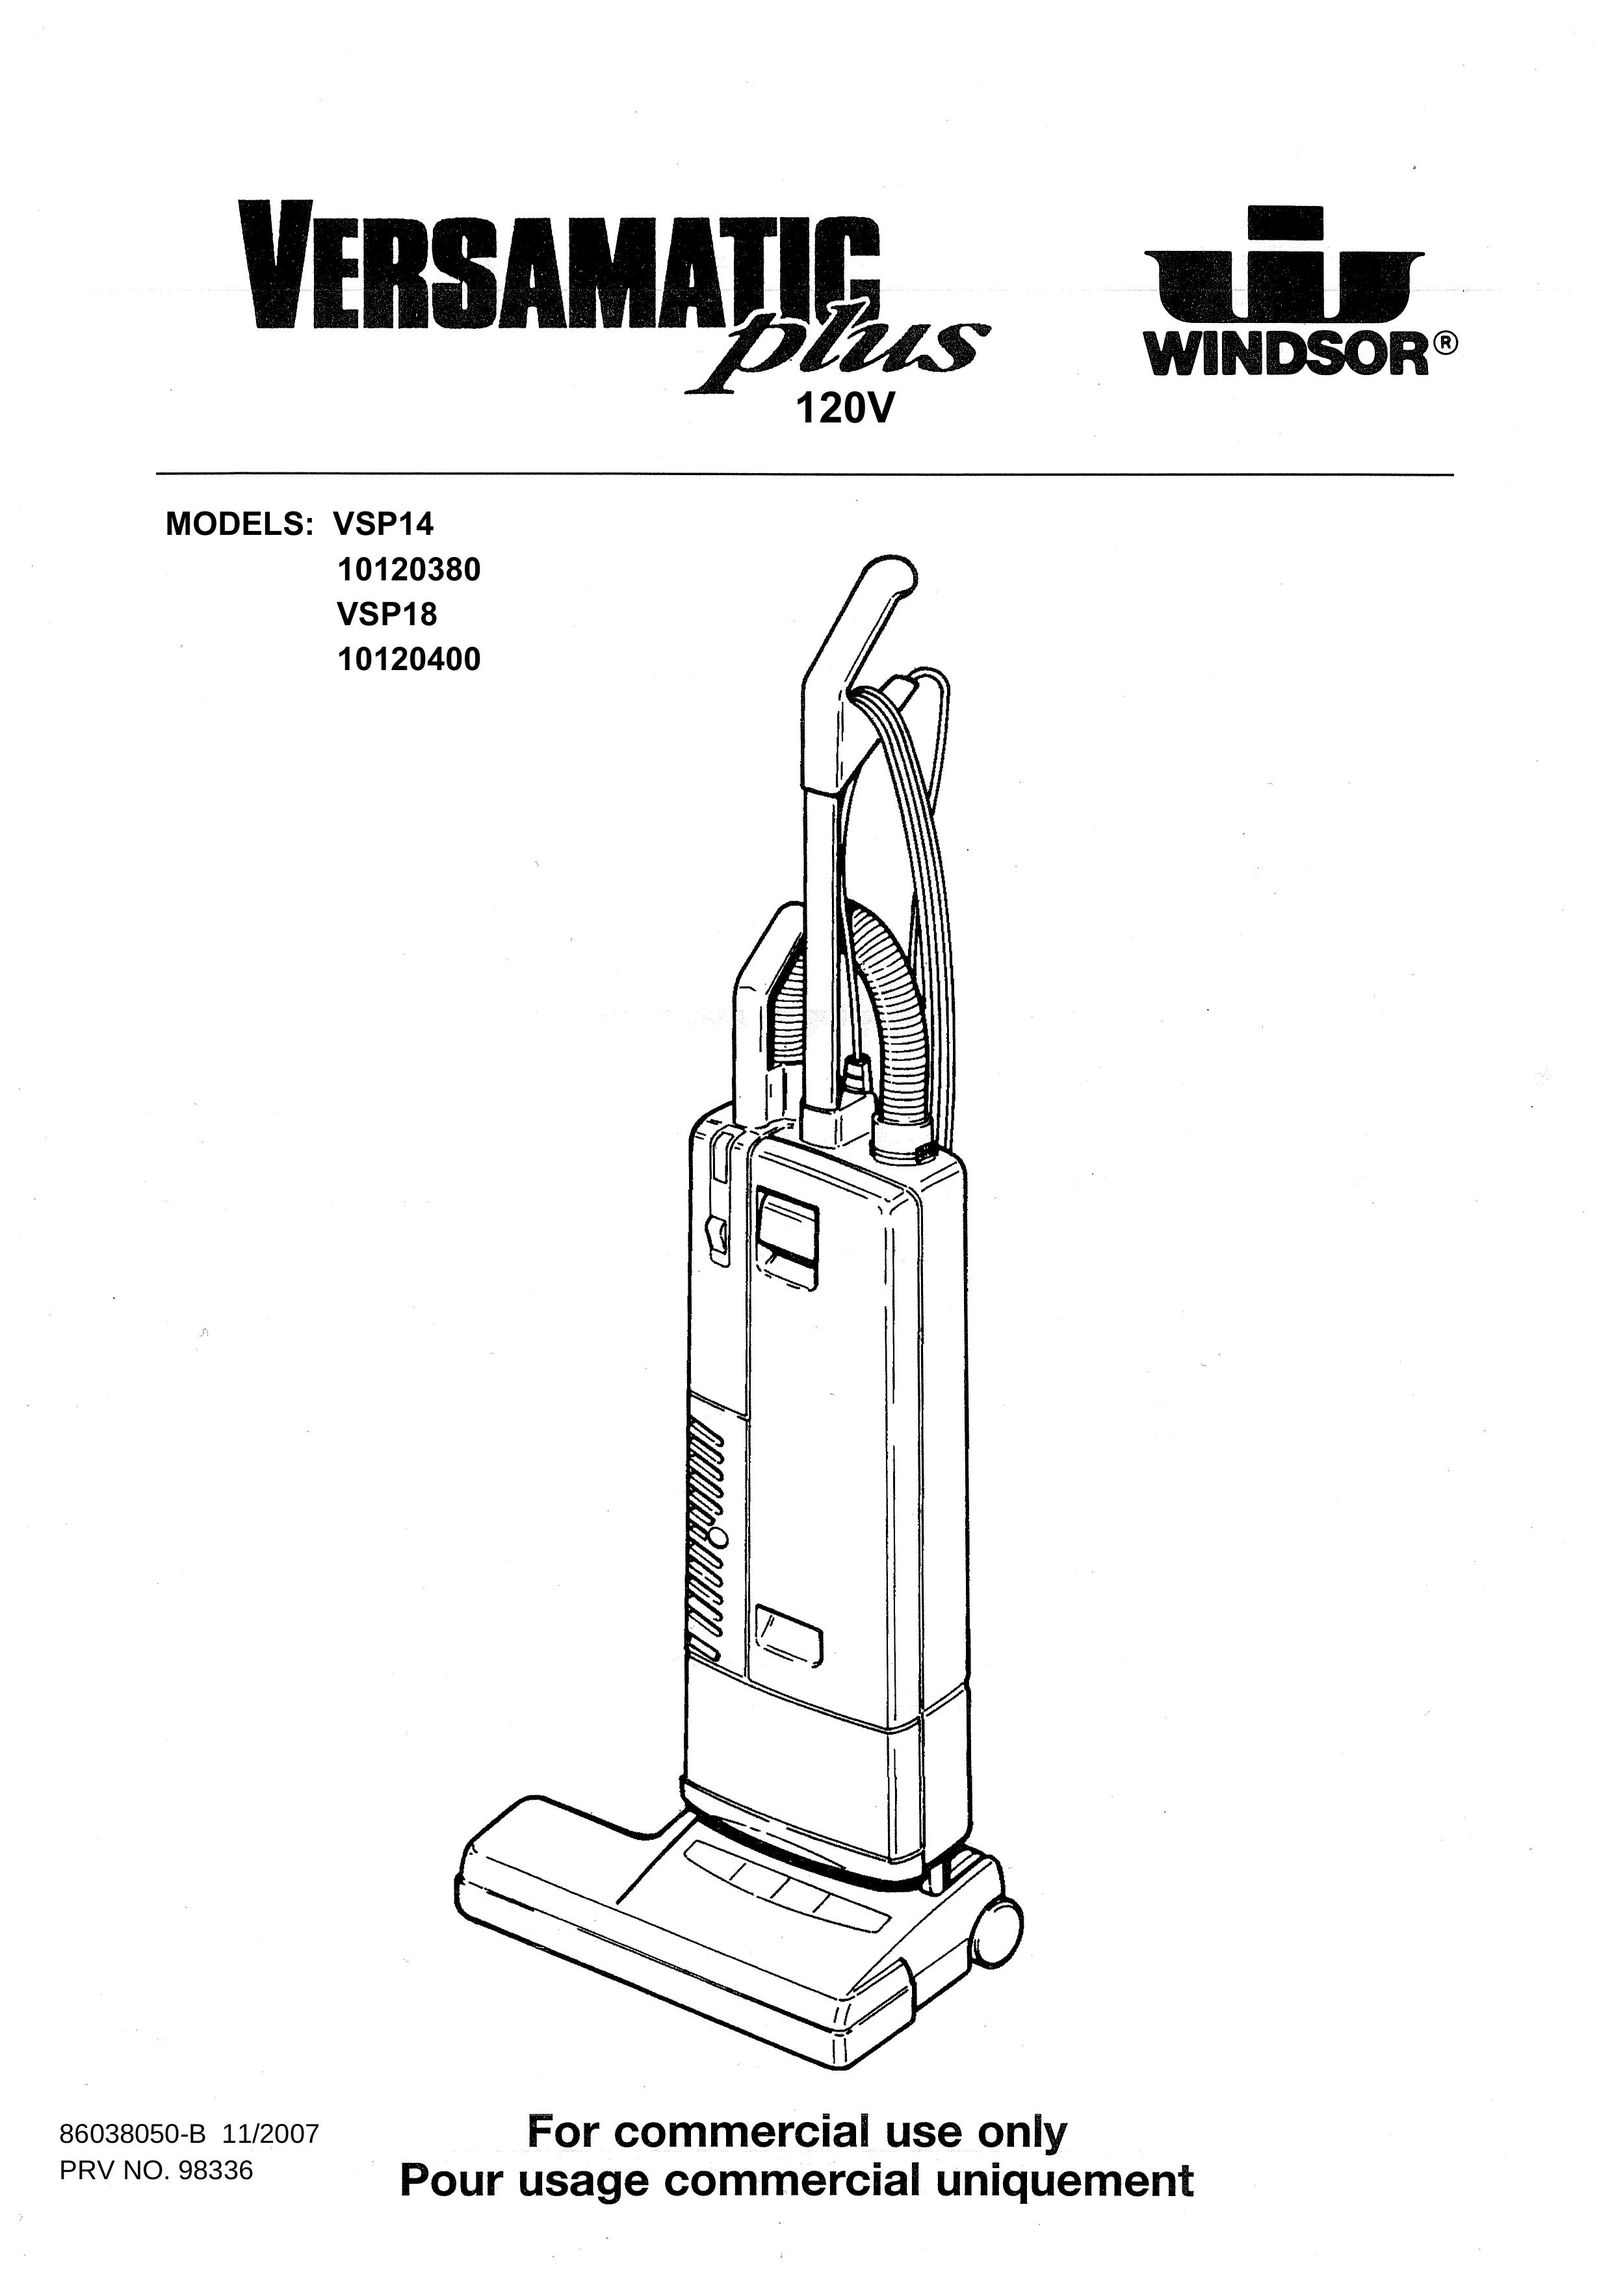 Windsor 10120380 Vacuum Cleaner User Manual